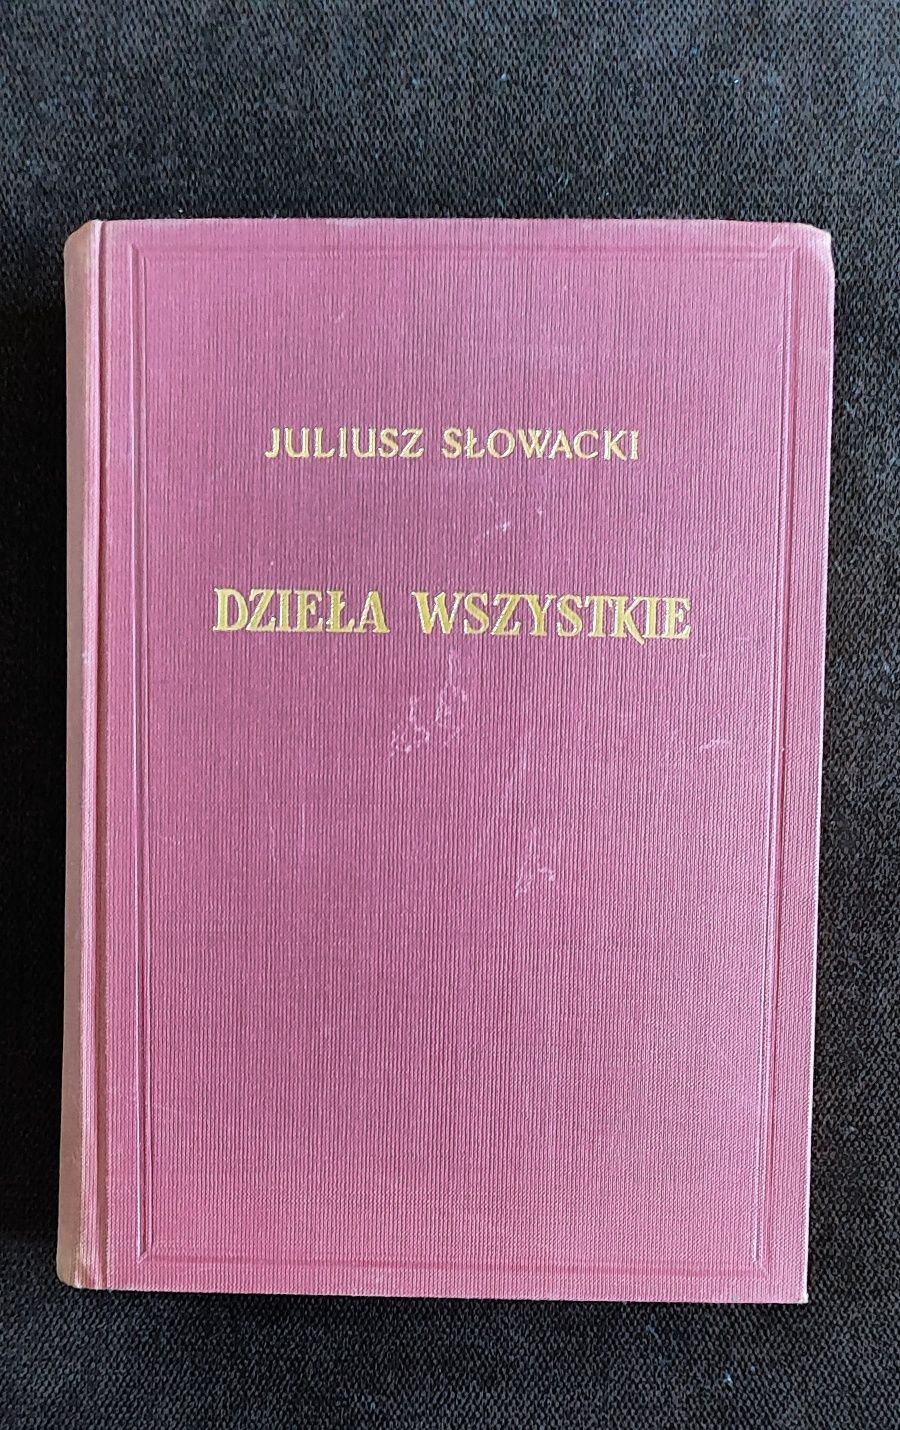 Juliusz Słowacki dzieła wszystkie tom XVI